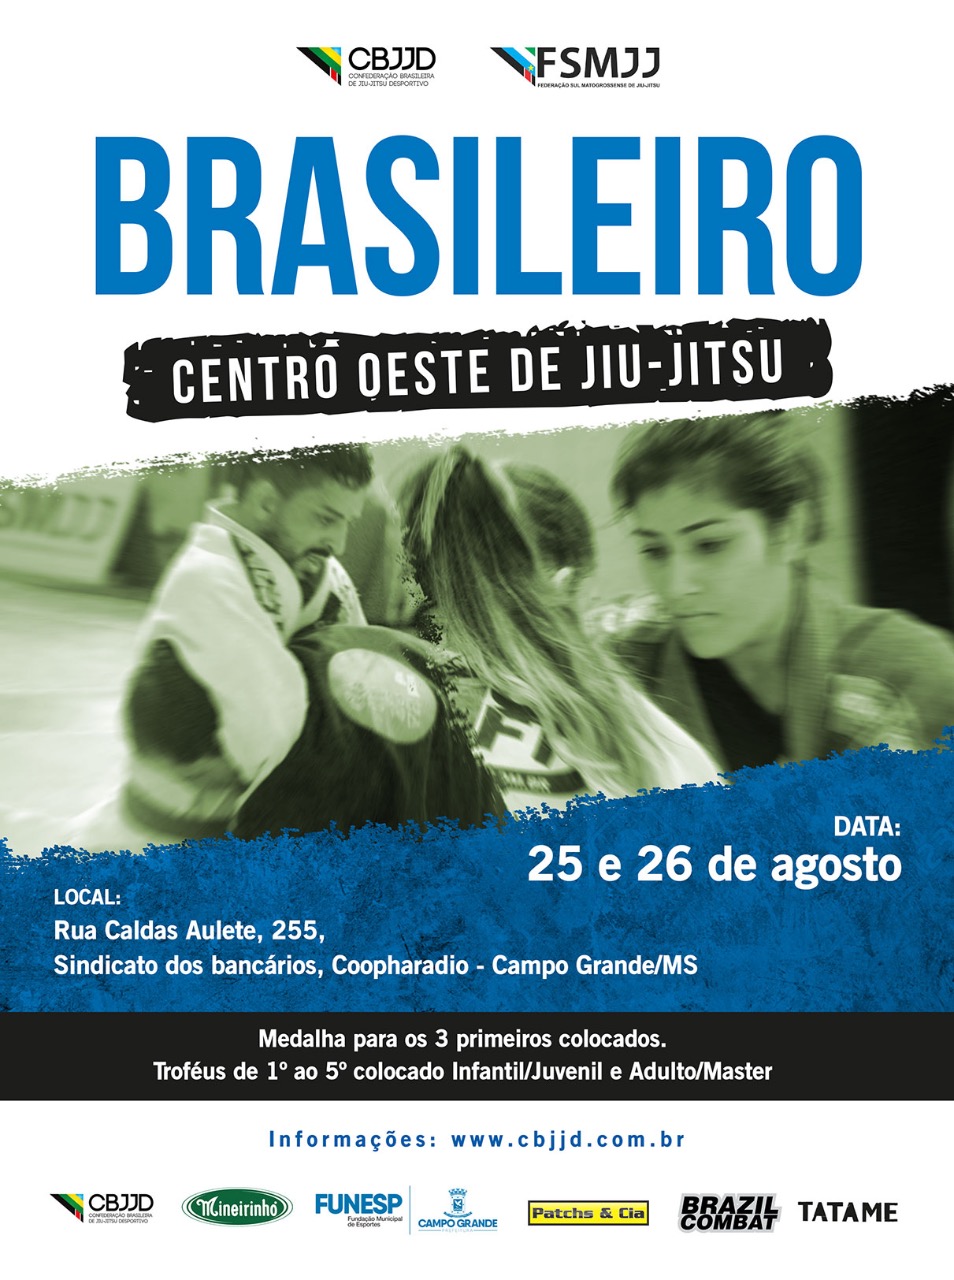 CBJJD e FJJD-MS preparam grande festa para o primeiro Brasileiro Centro-Oeste de Jiu-Jitsu; confira